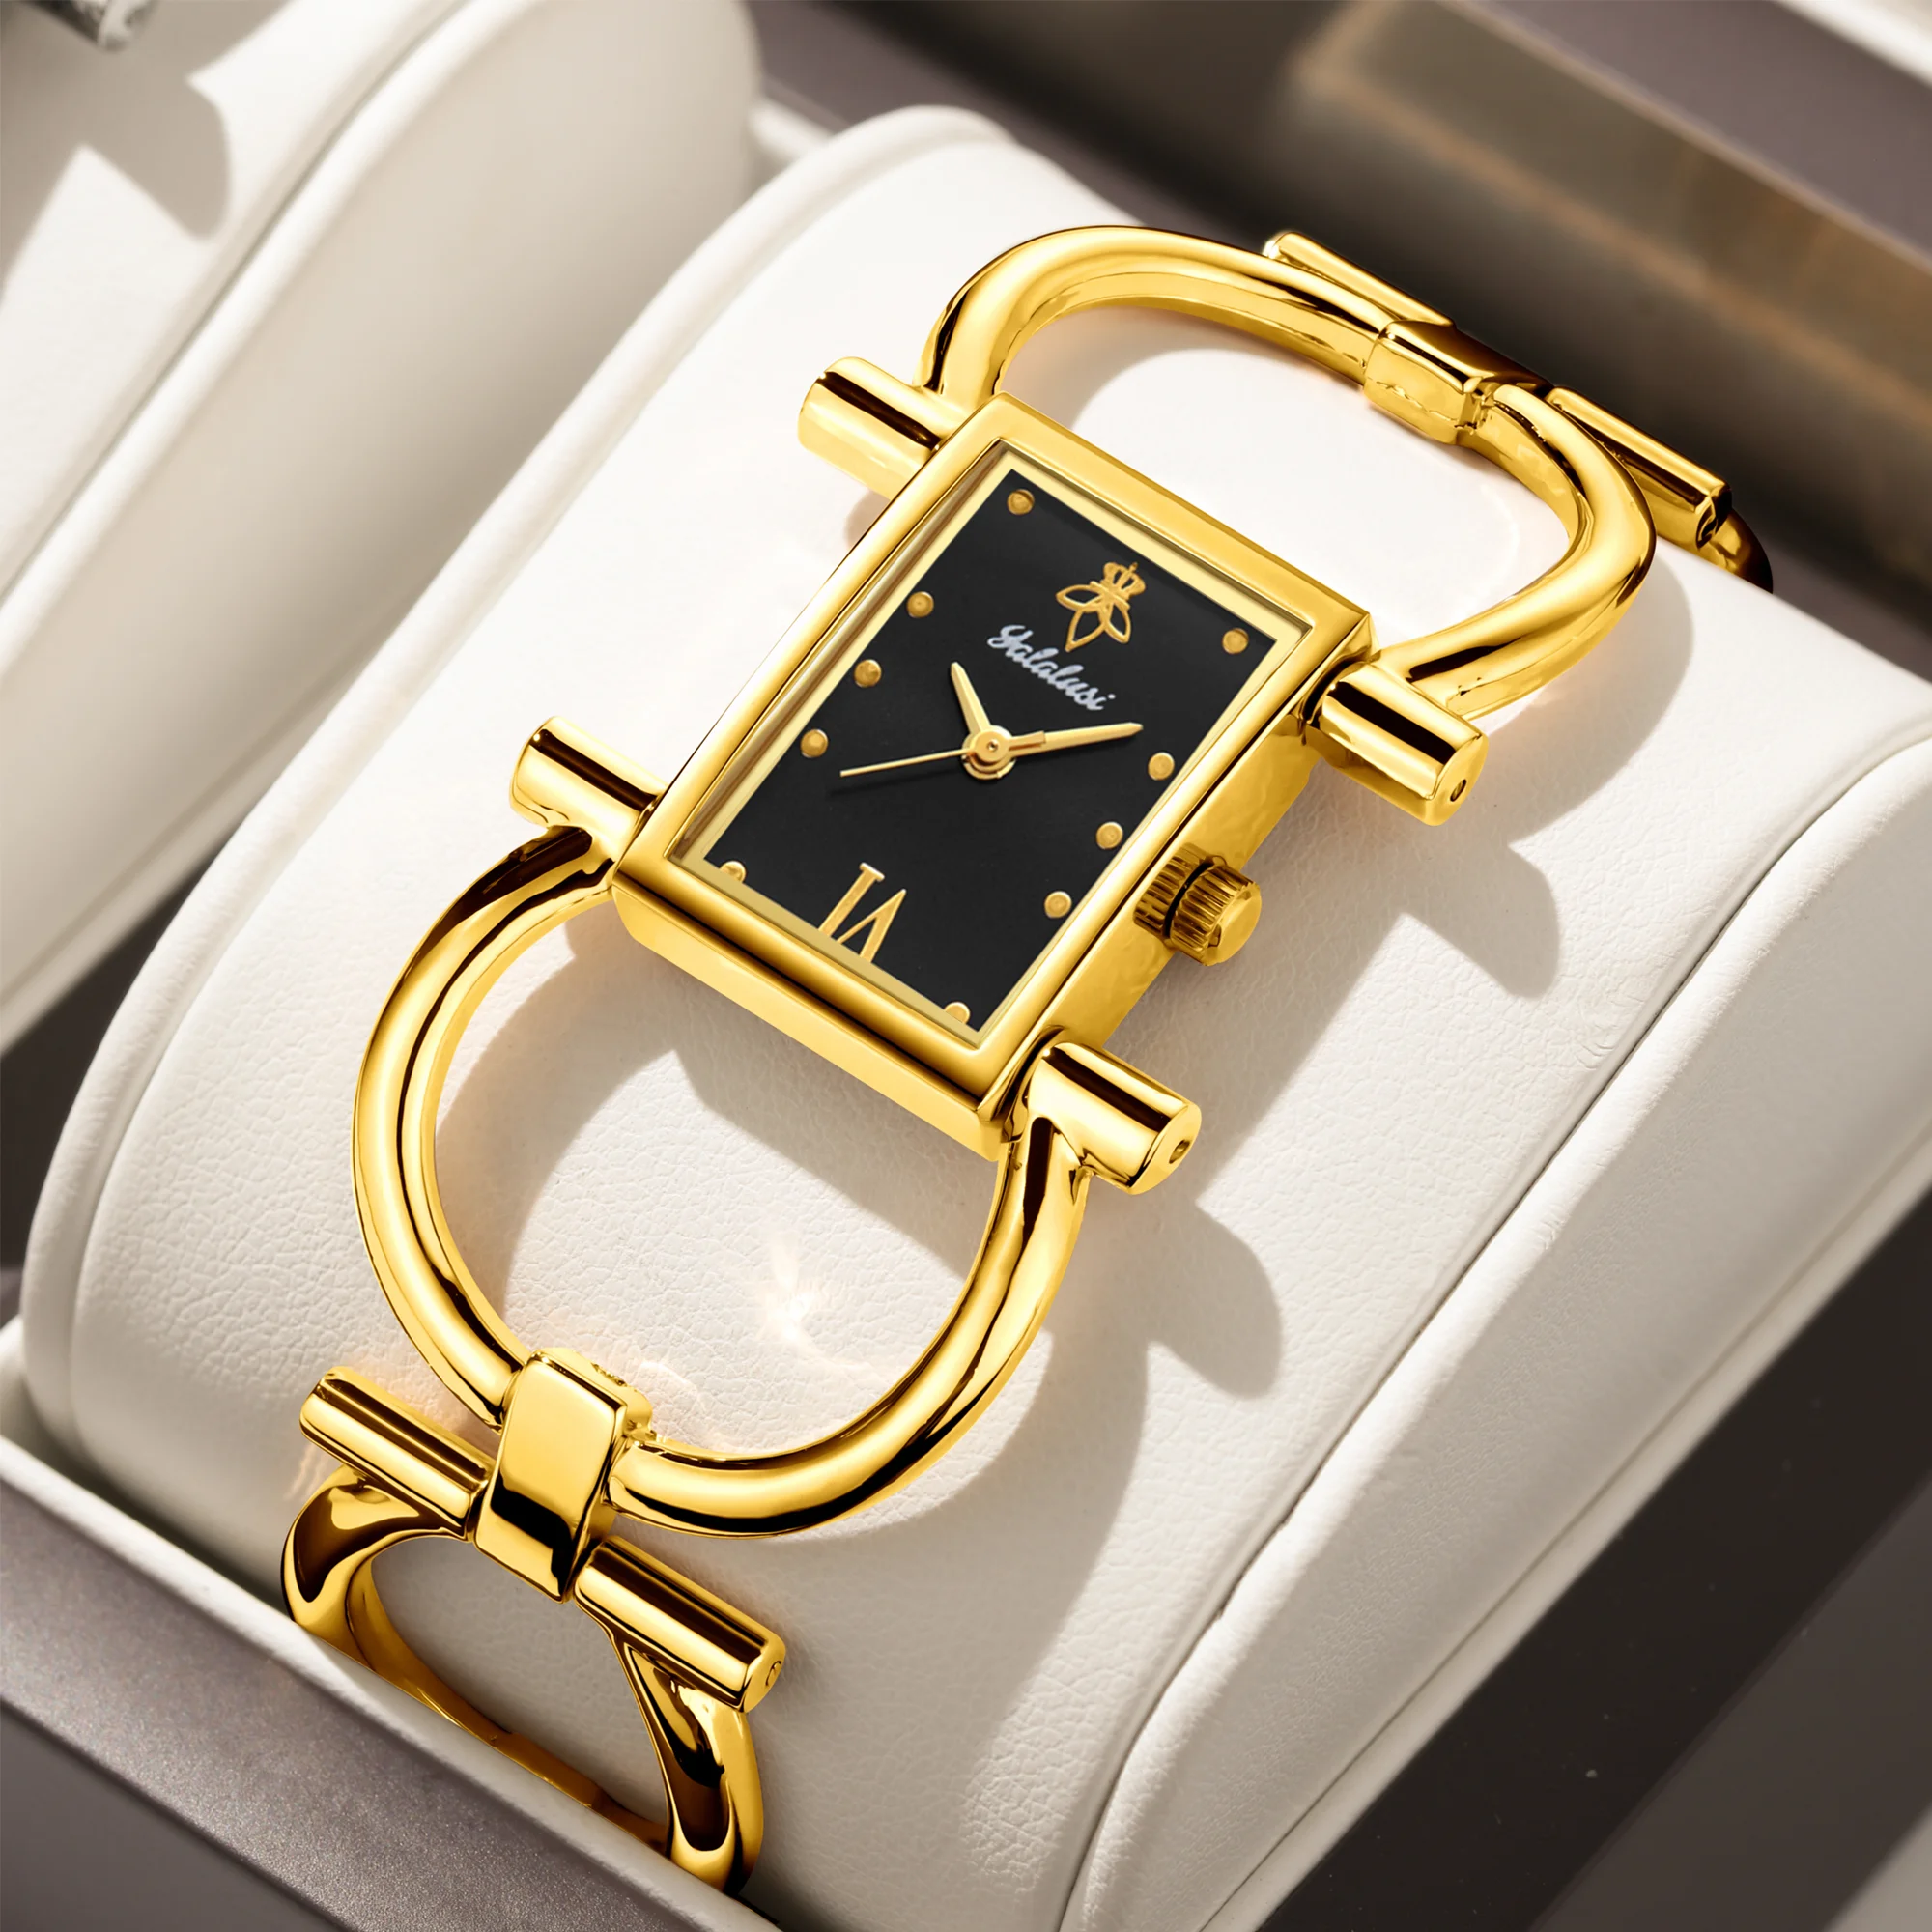 

Топ-бренд YaLaLuSi женские часы Прямоугольные золотистые Чехол черный циферблат простой Скелет Бизнес ионное покрытие Подарочная коробка регулятор